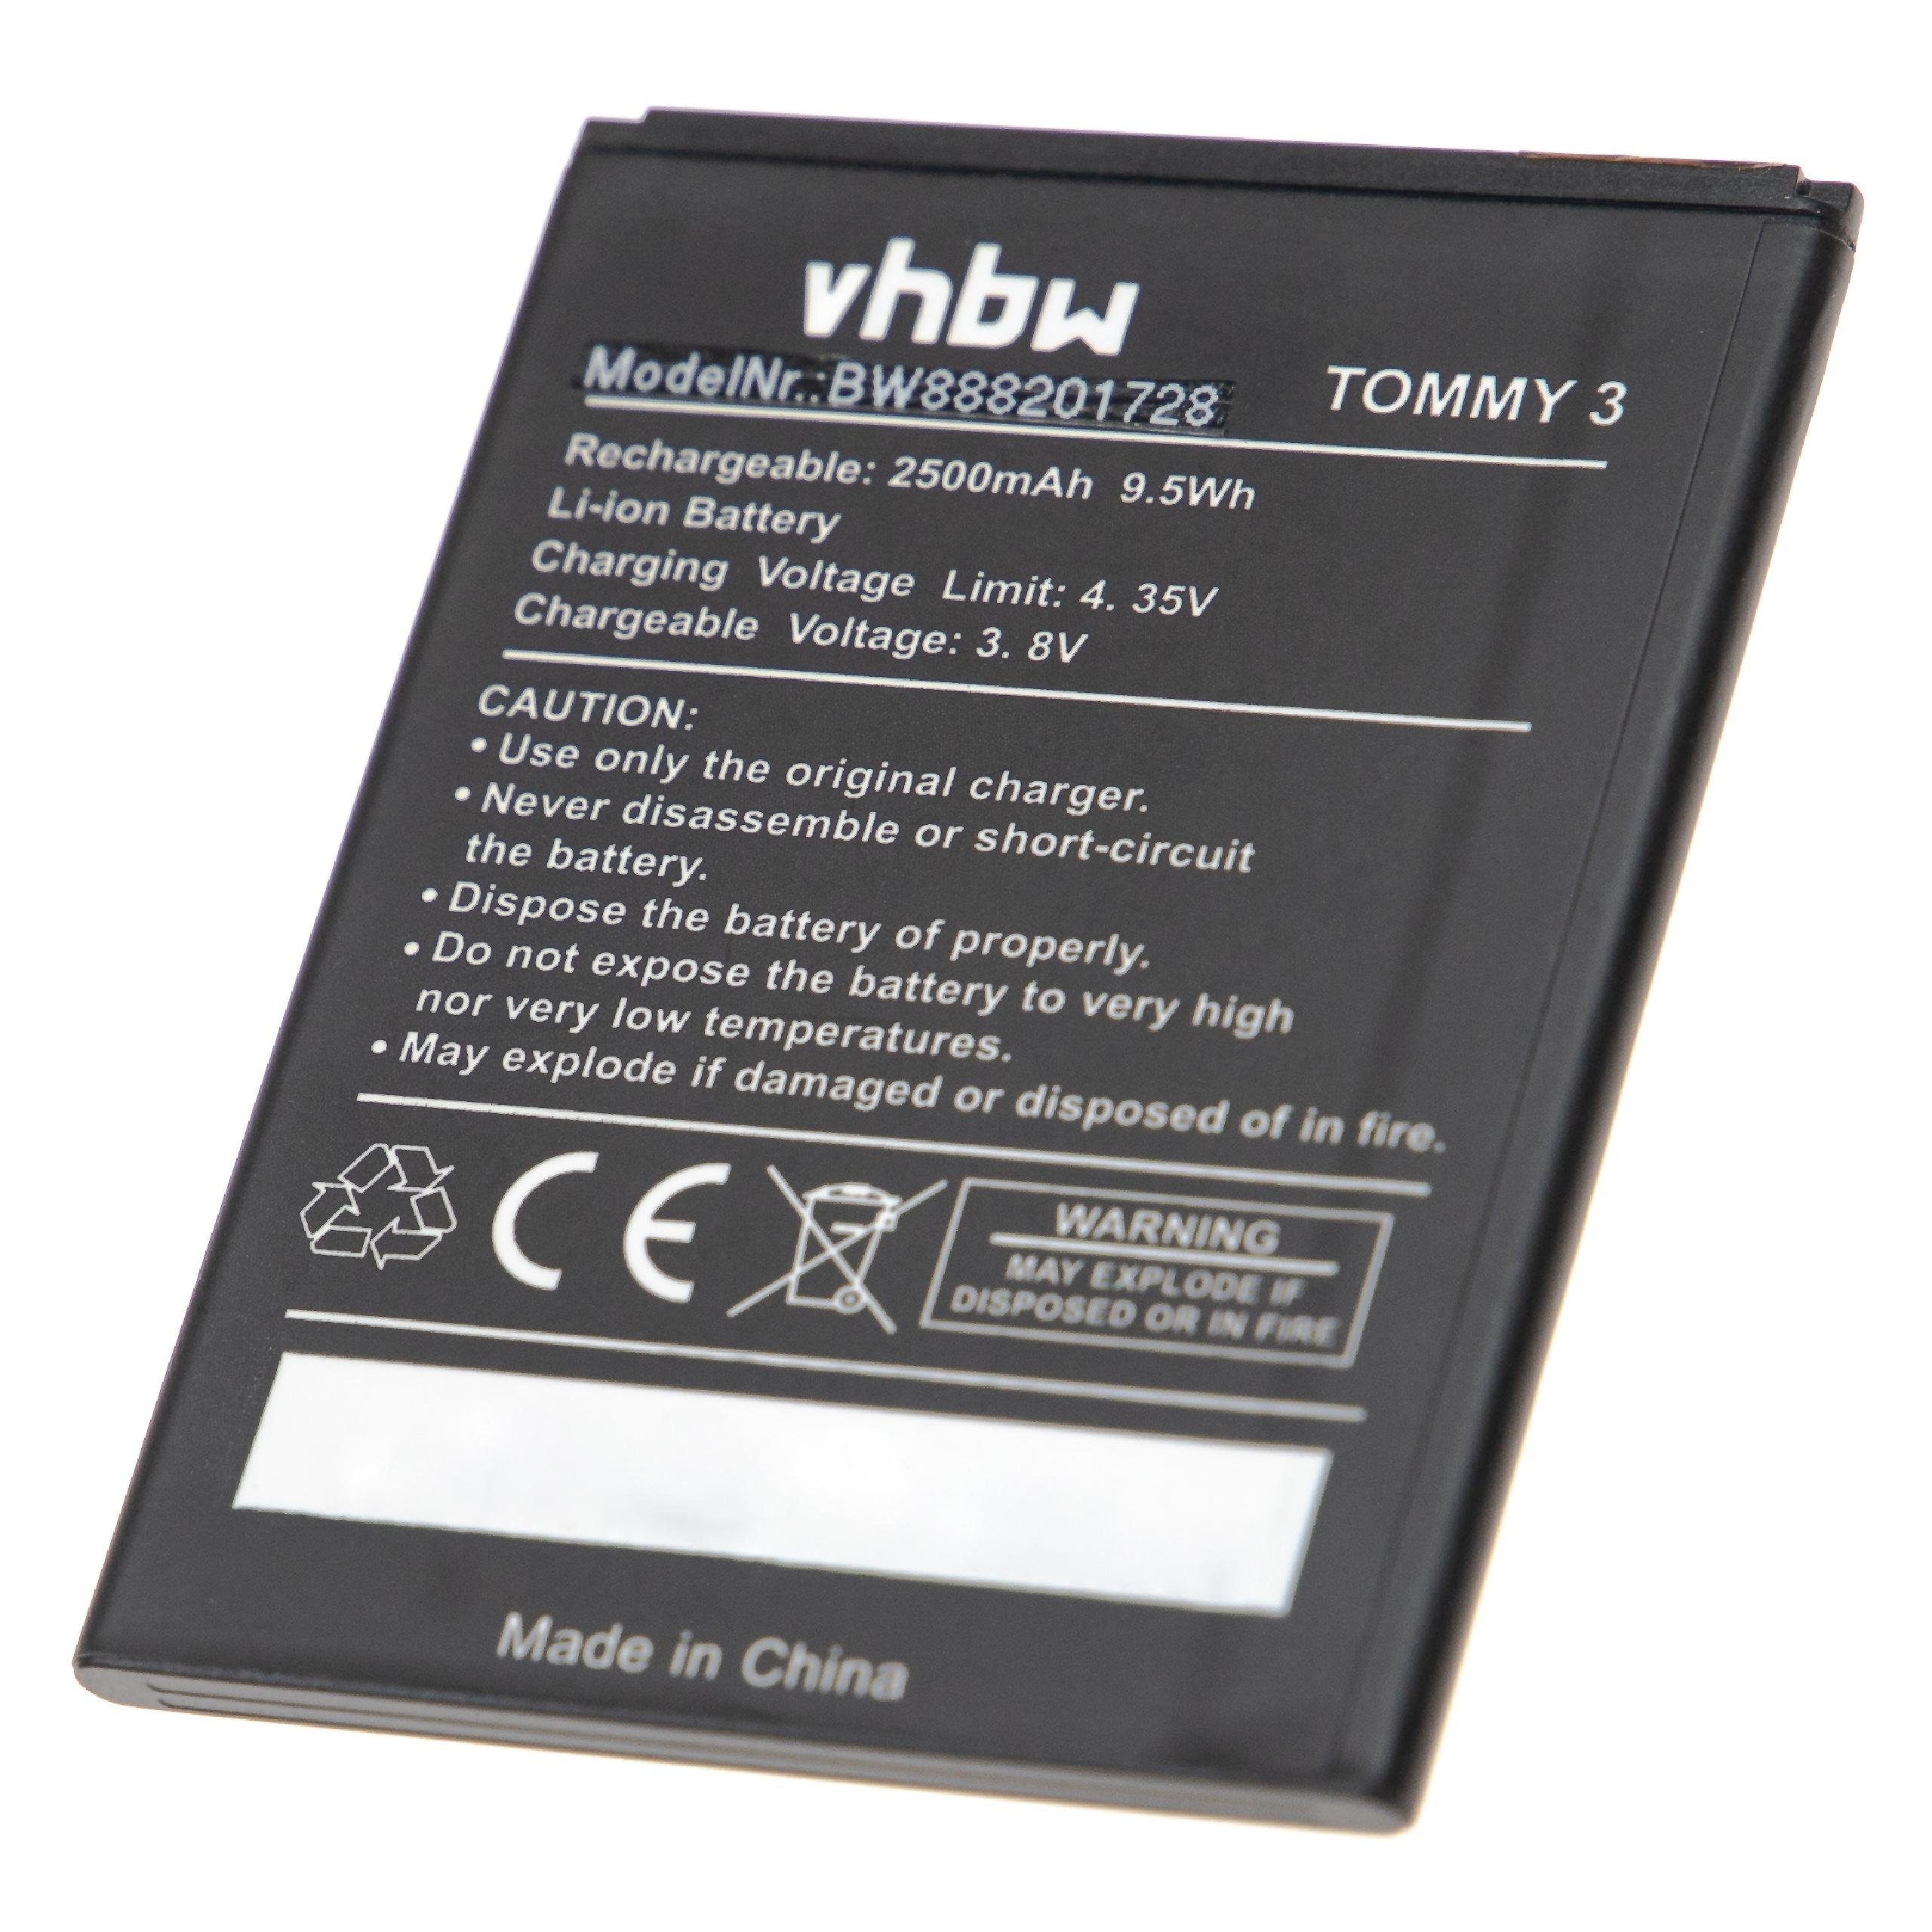 Tommy kompatibel mit (3,8 3 Smartphone-Akku V) Li-Ion Wiko 2500 vhbw mAh